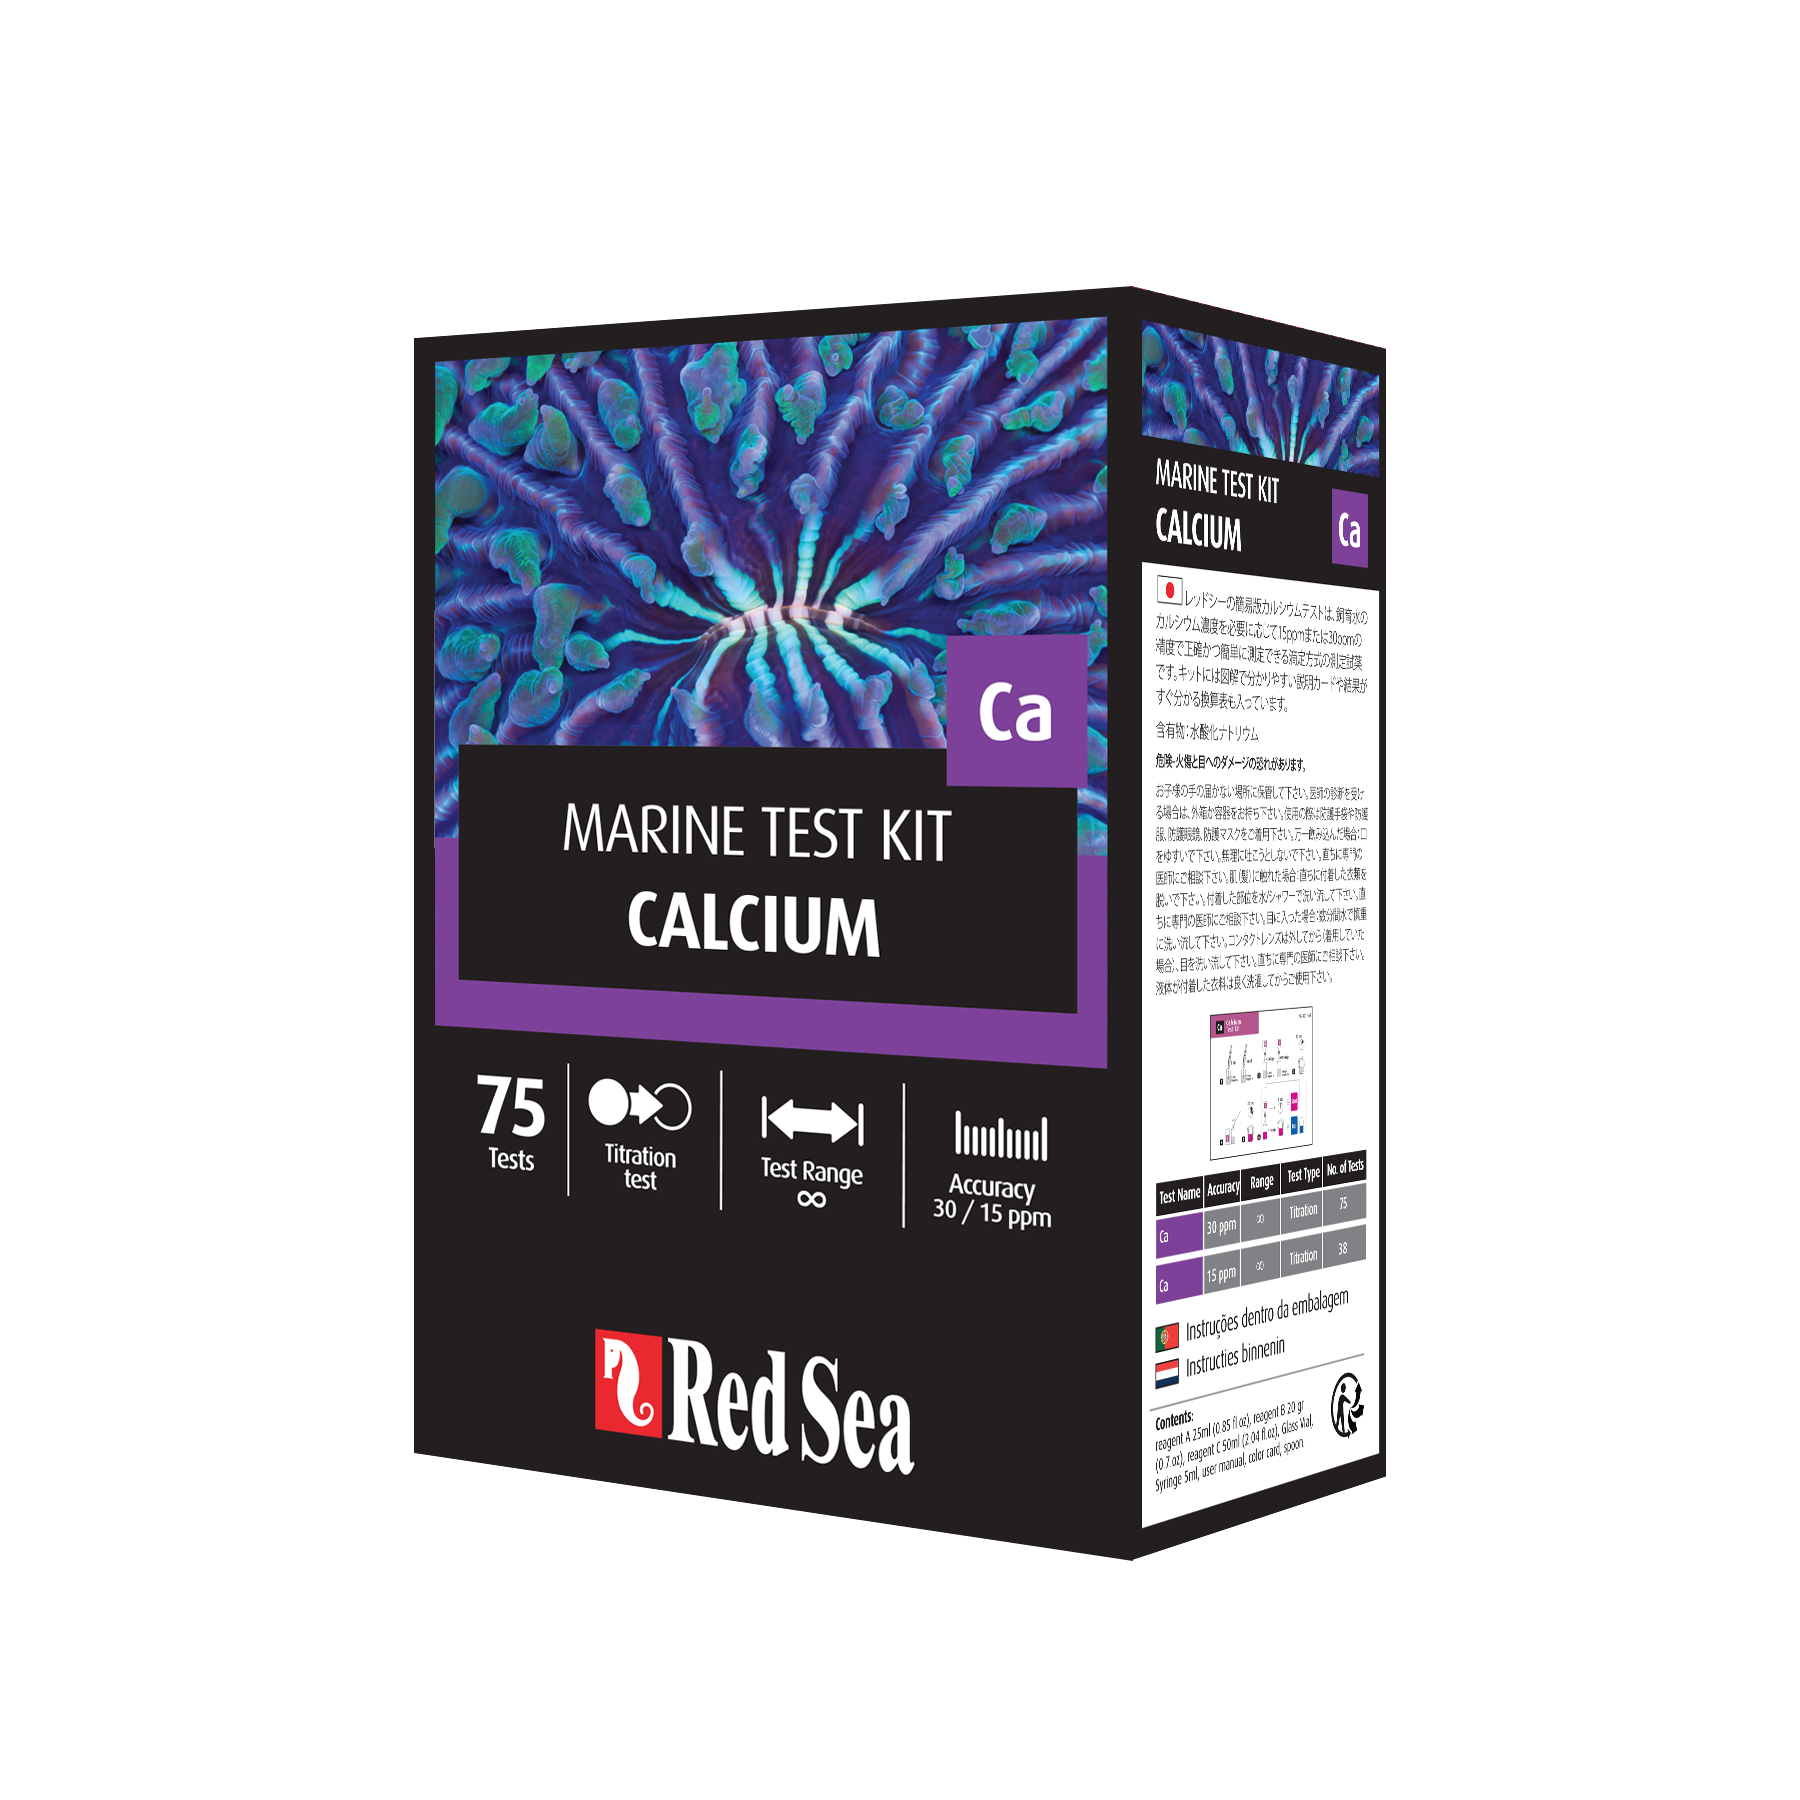 Red sea Calcium test kit